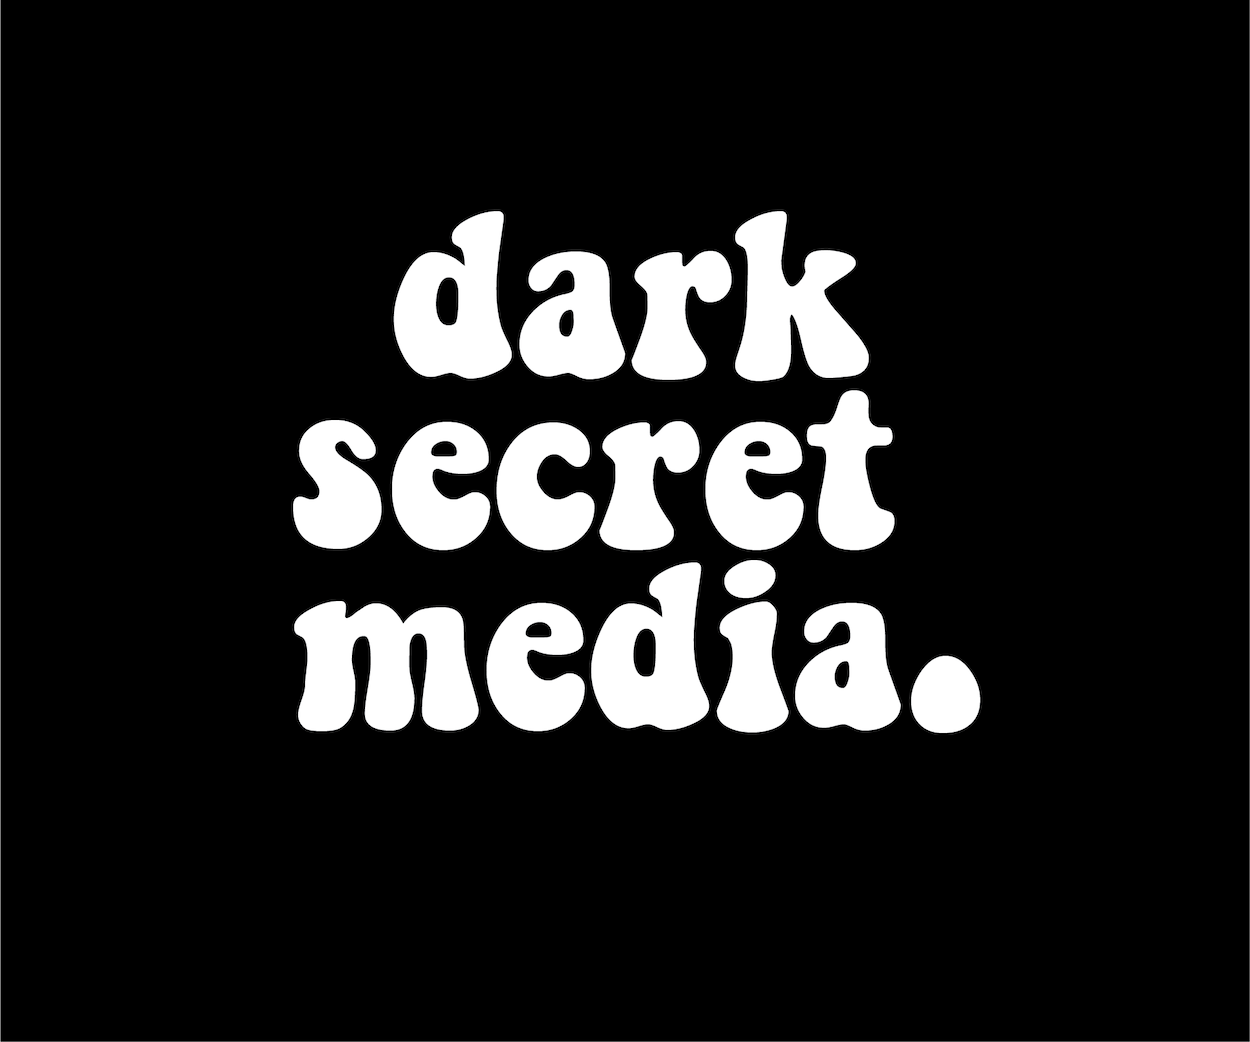 DARK SECRET MEDIA